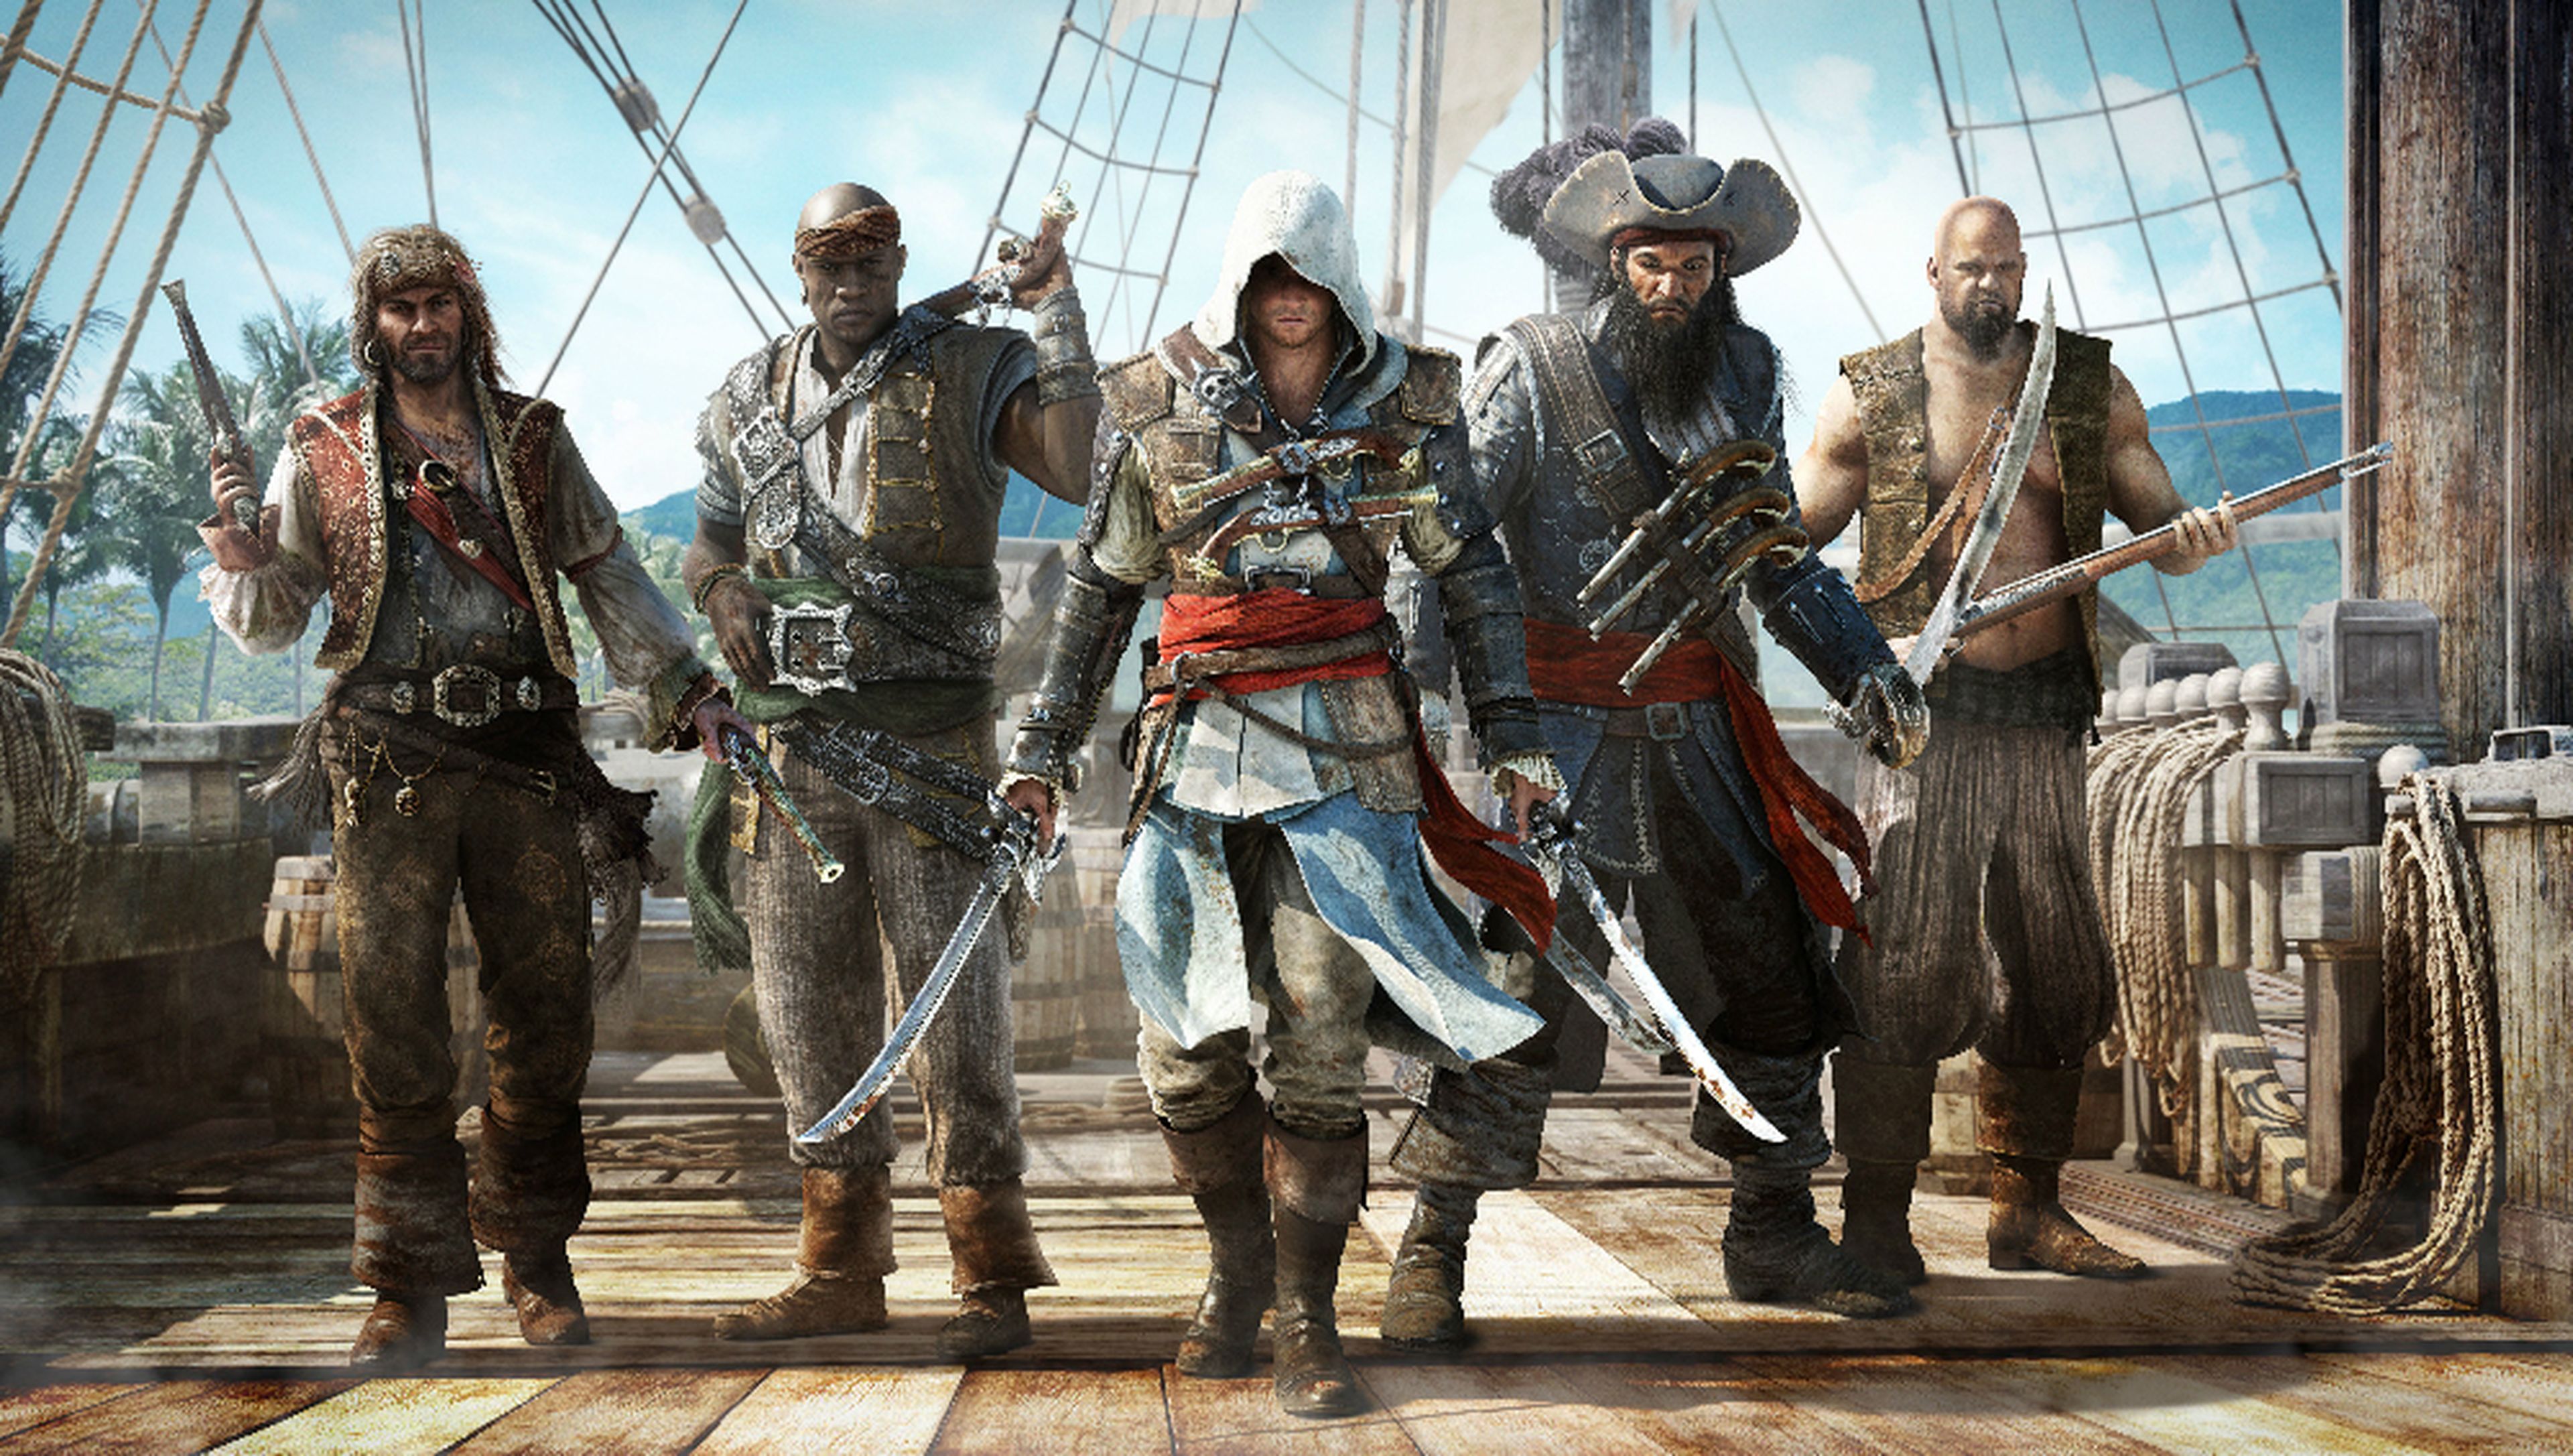 Assassins Creed IV: Black Flag durará 50 horas como mínimo